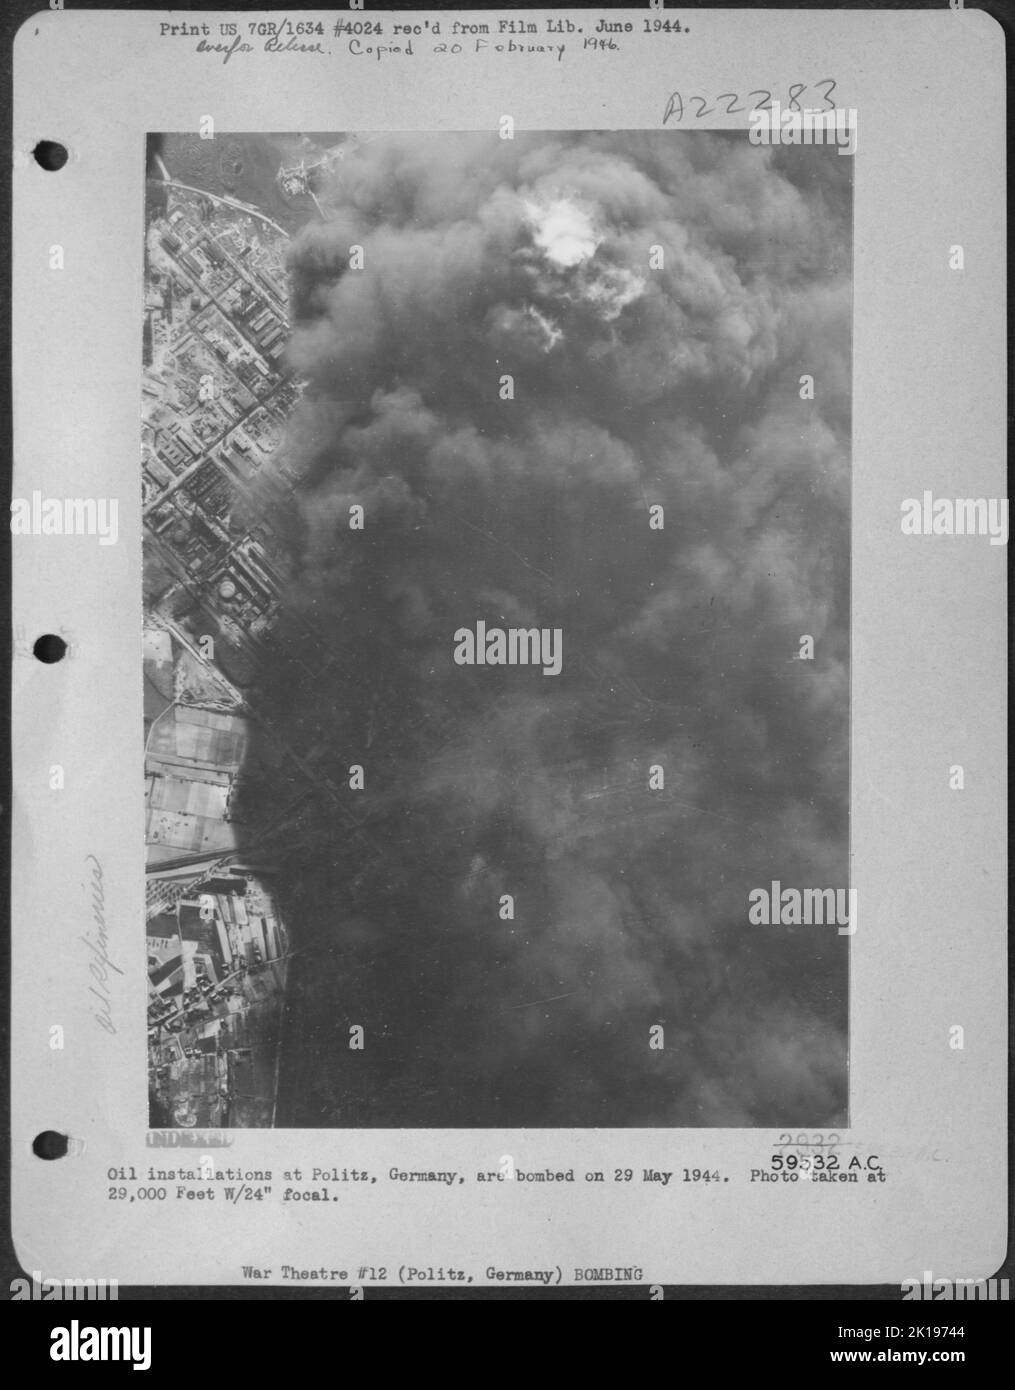 Gli impianti petroliferi di Politz, Germania, sono bombardati il 29 maggio 1944. Foto scattata a 29.000 piedi W/24' Focal. Foto Stock